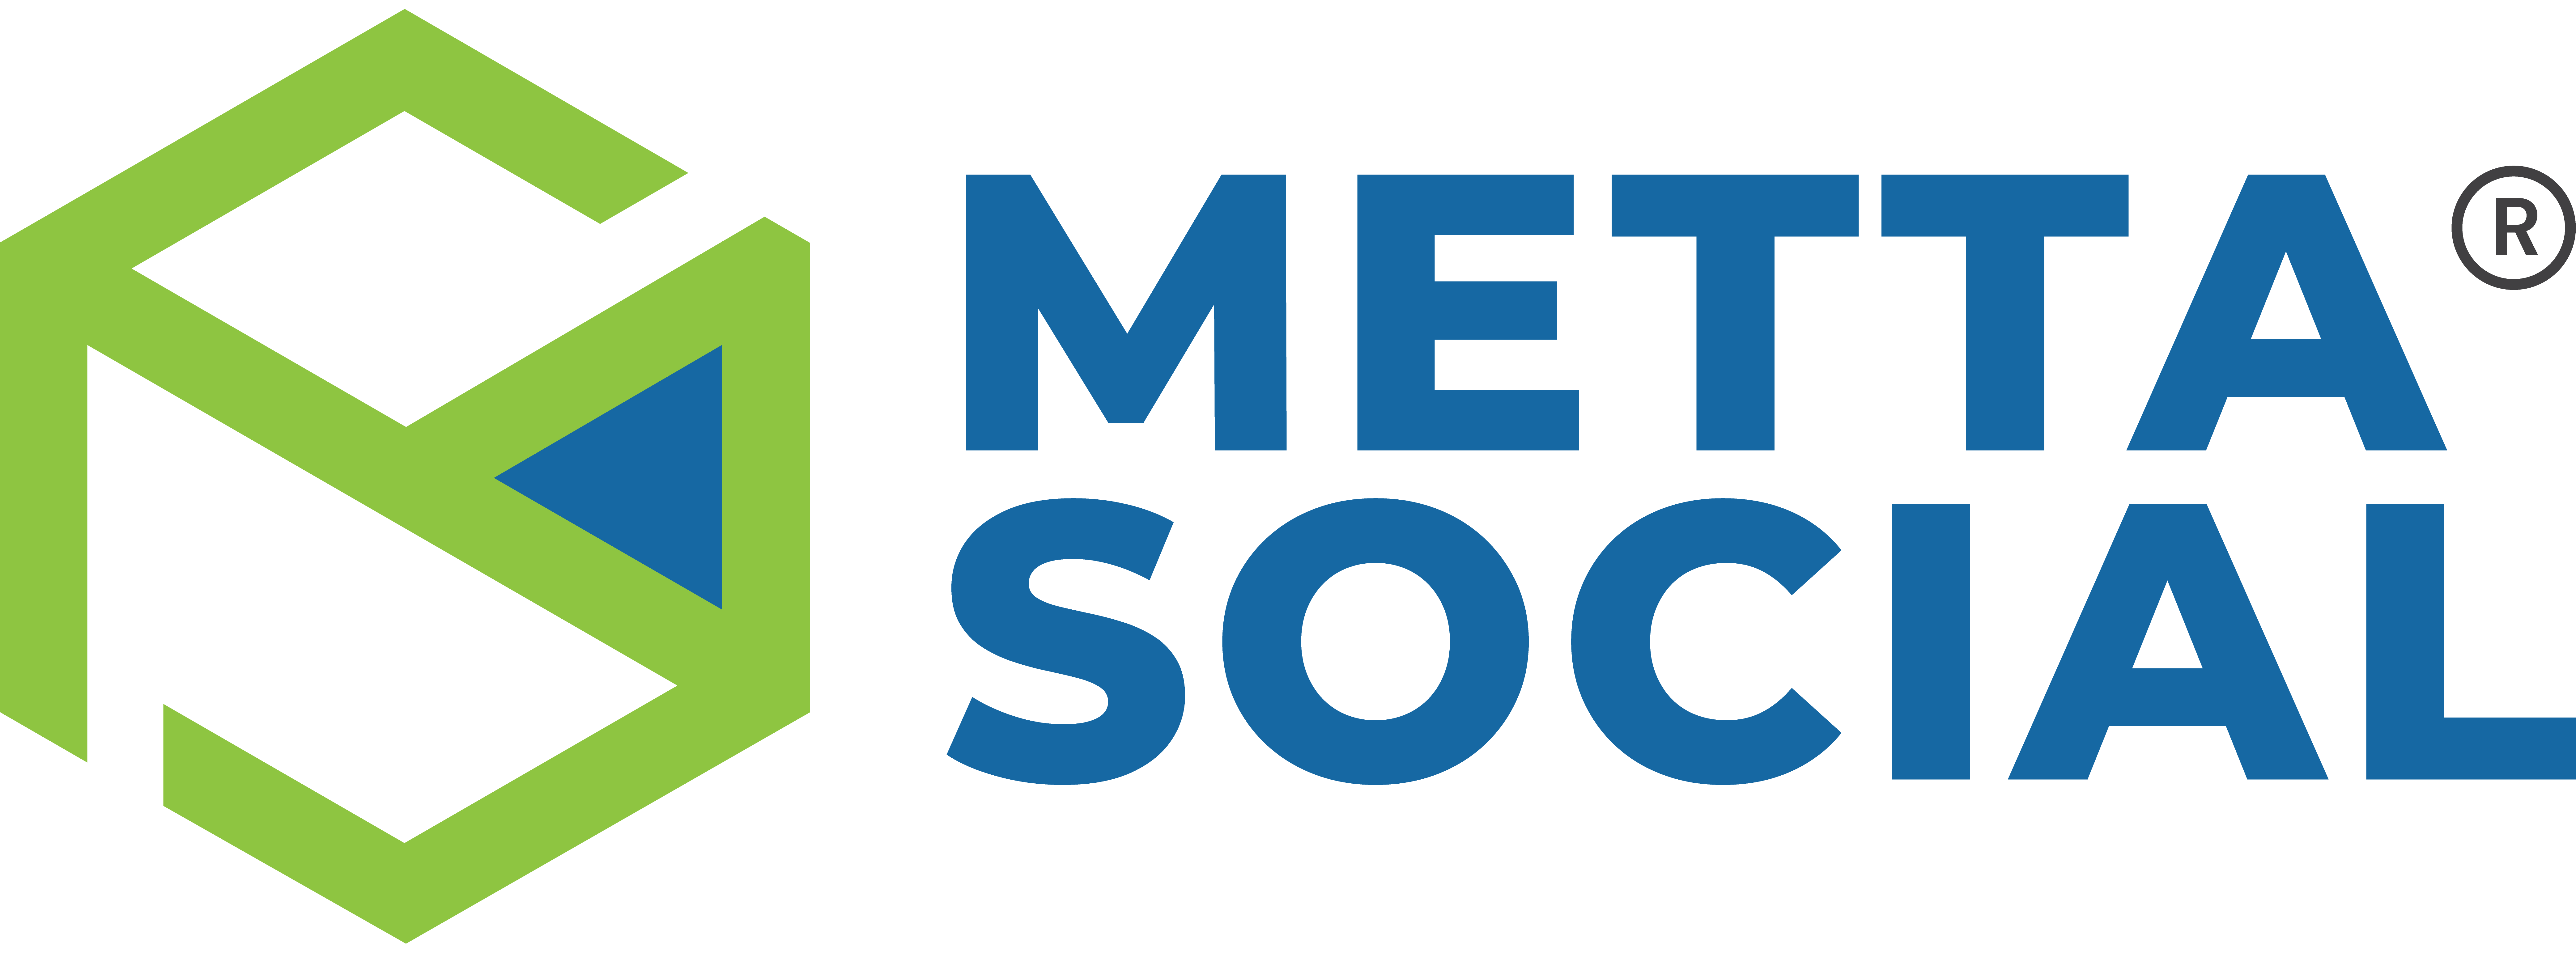 Metta Social solutions Pvt Ltd